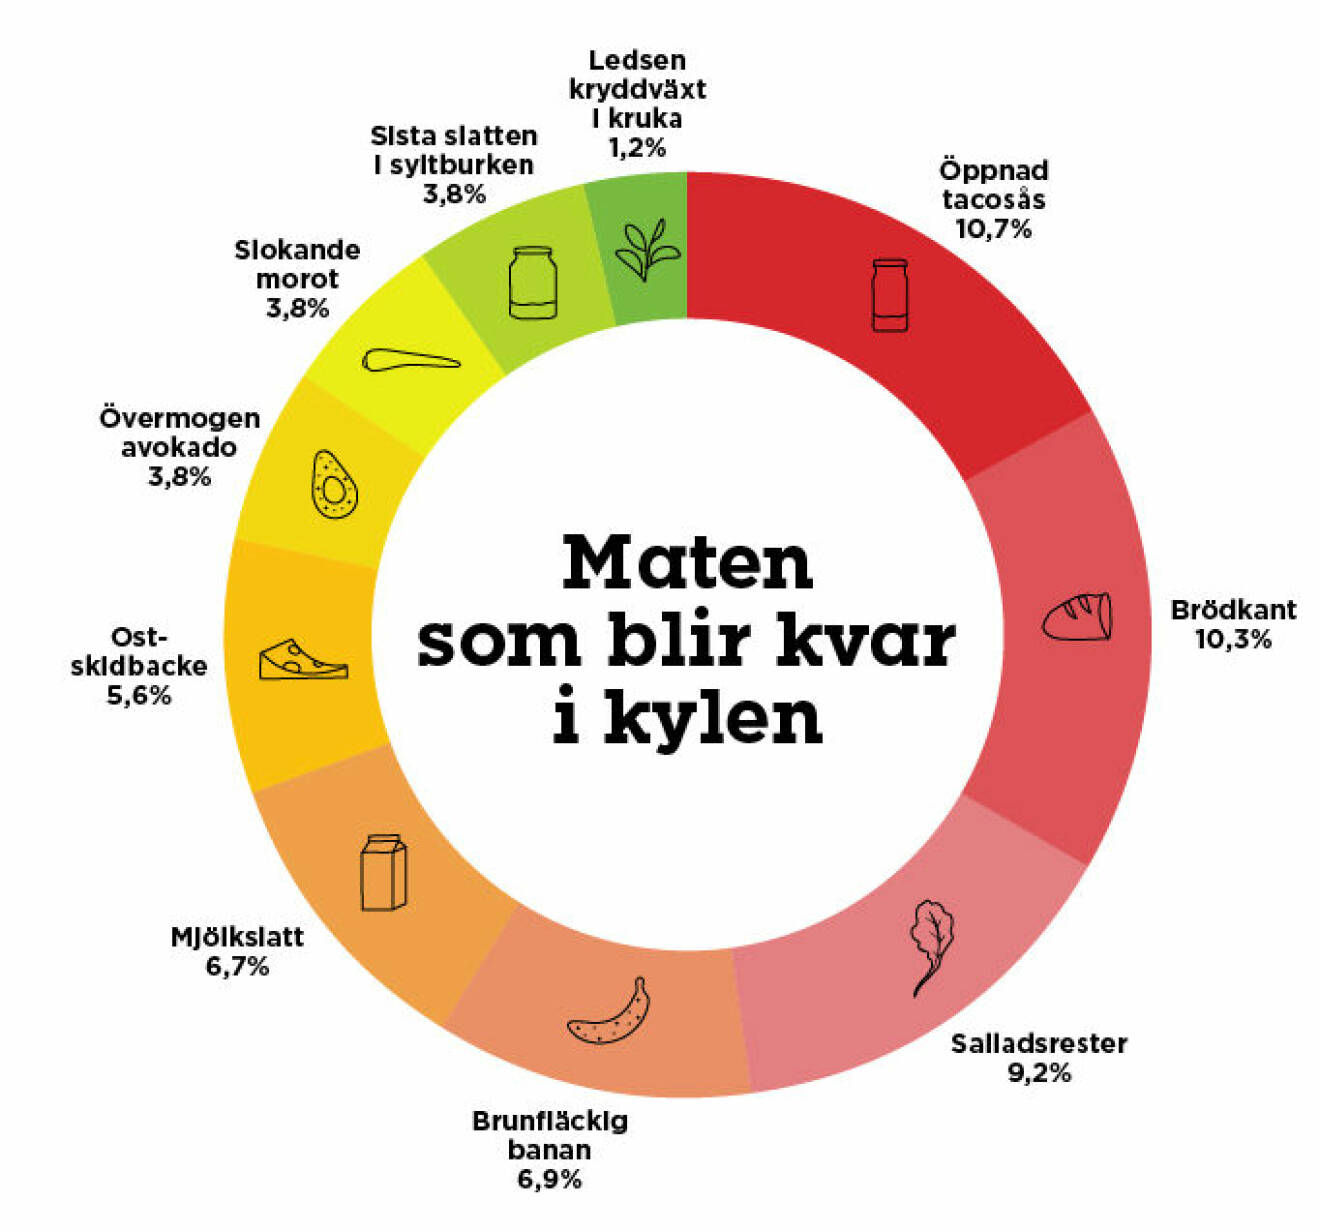 Grafik som visar vilka matvaror svenska hushåll oftast slänger i soporna, enligt en undersökning från Willys och Kantar Sifo.